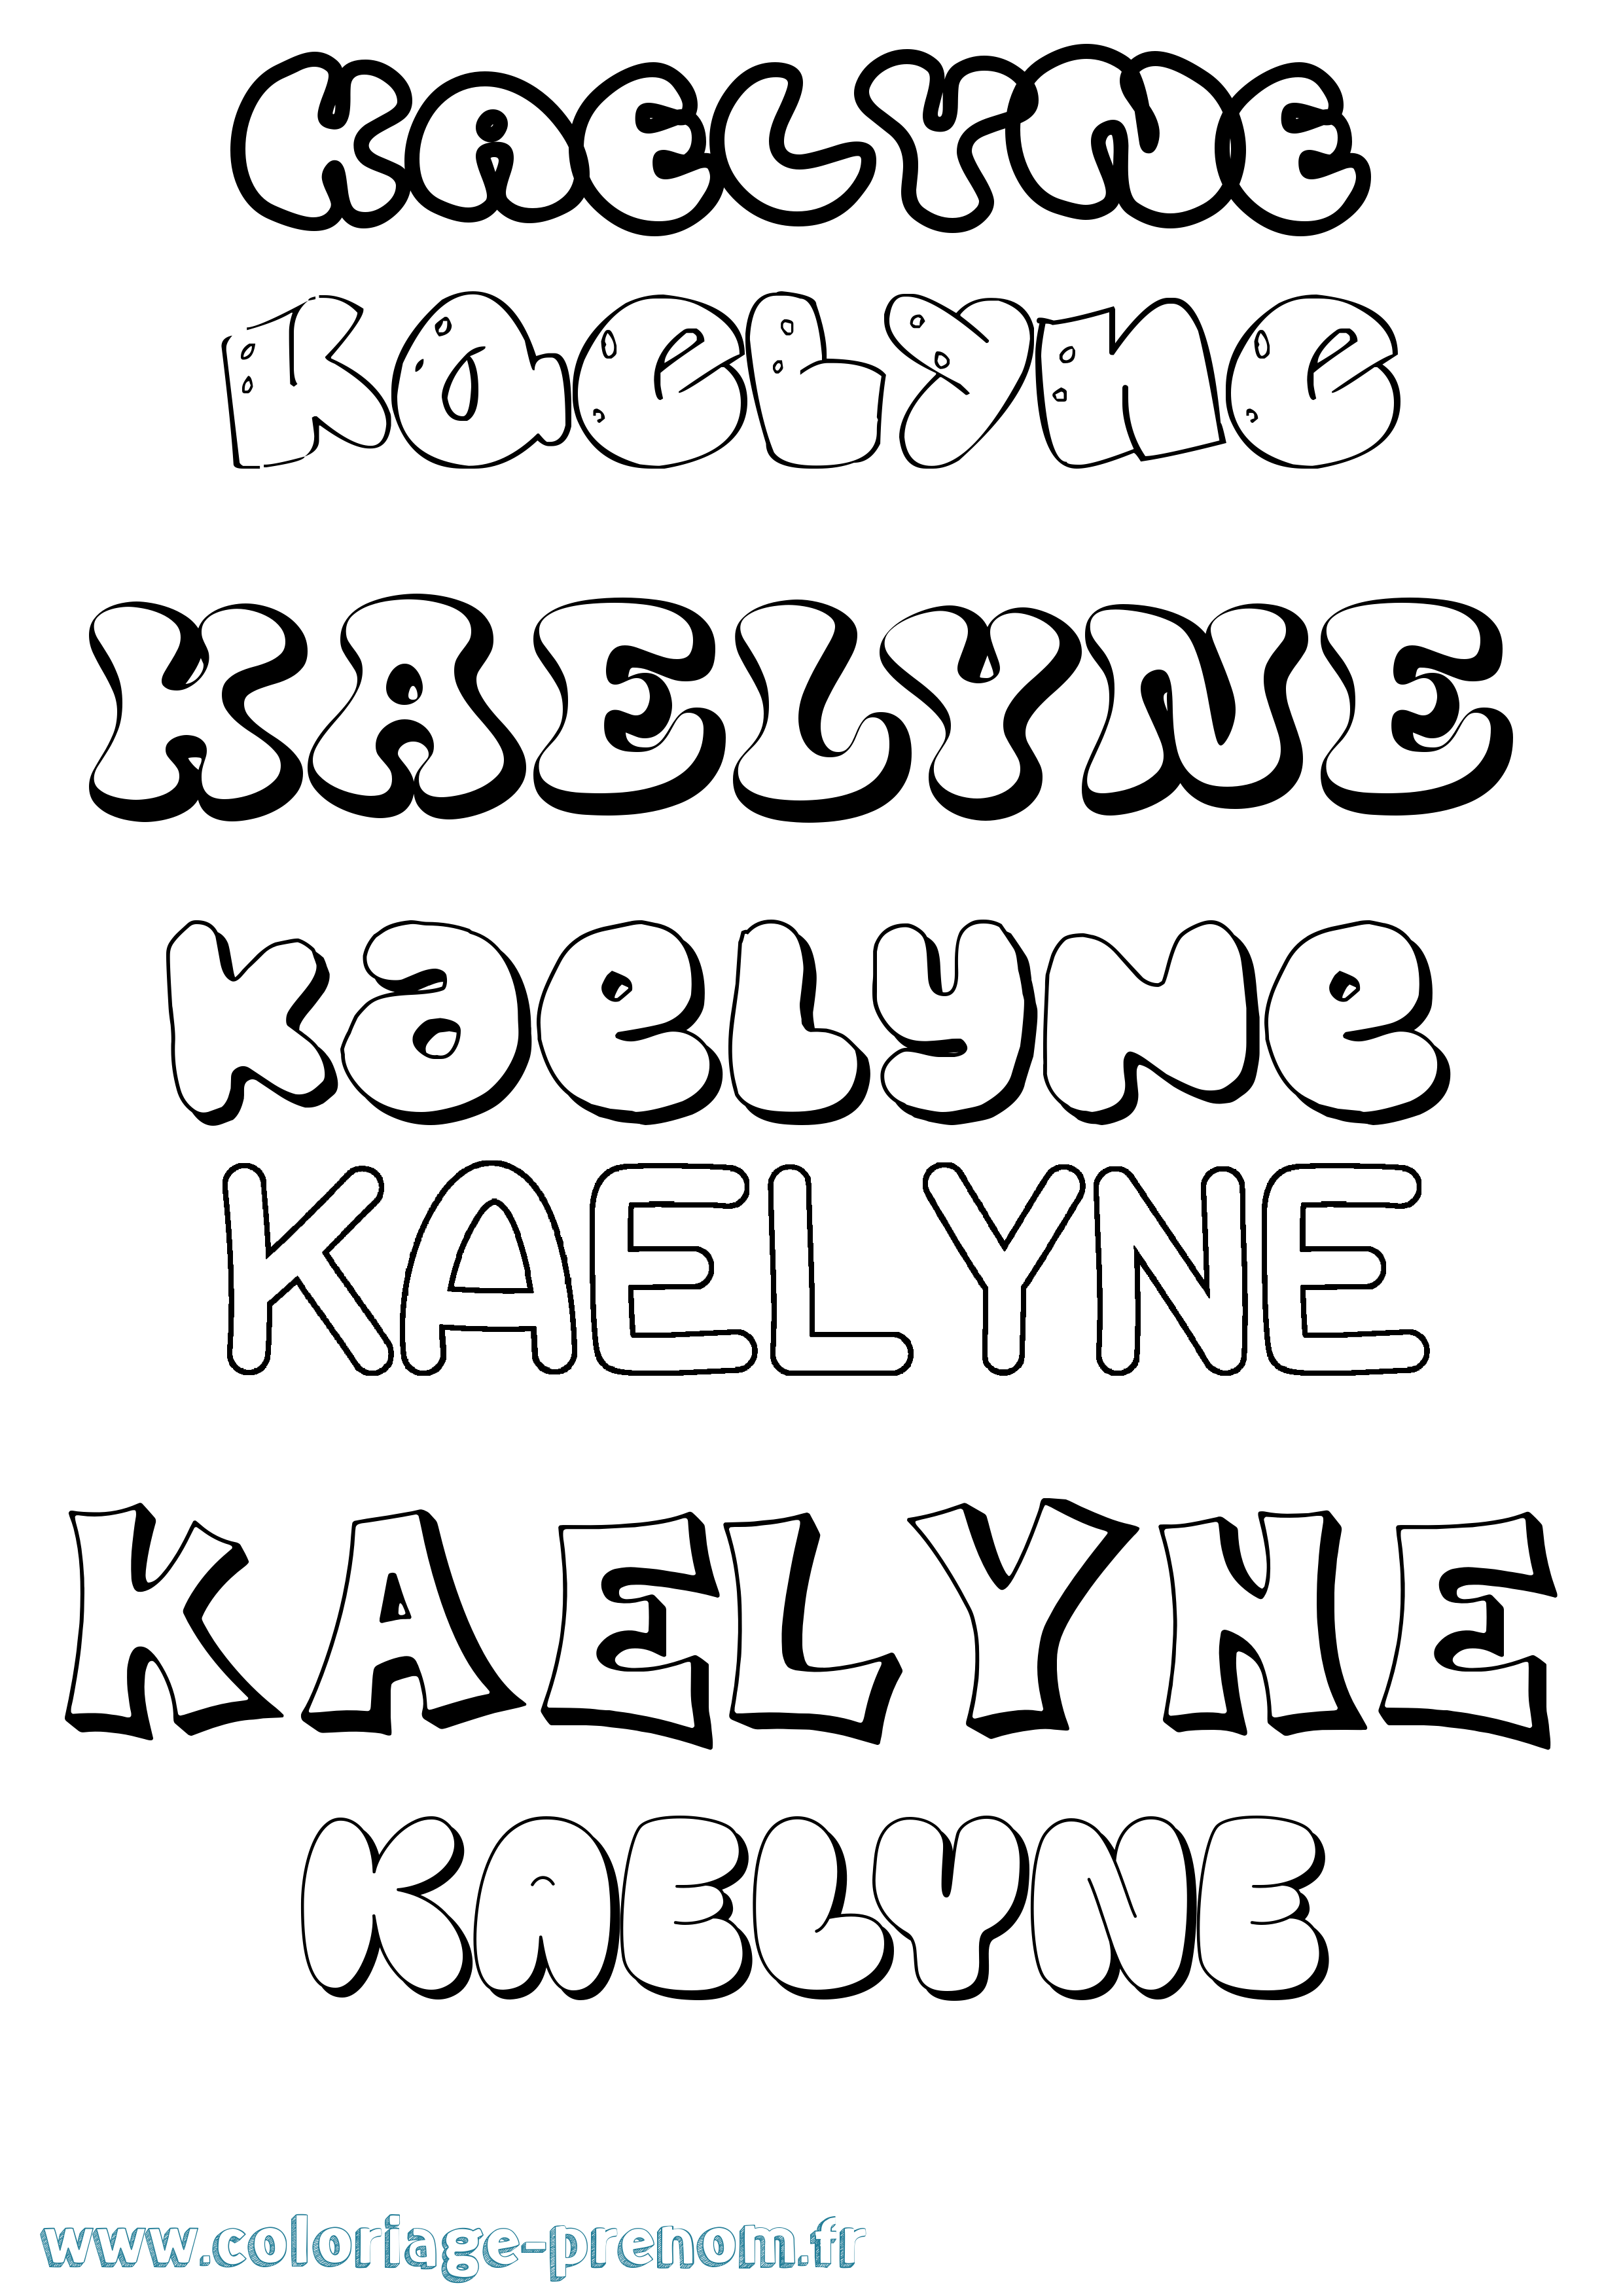 Coloriage prénom Kaelyne Bubble